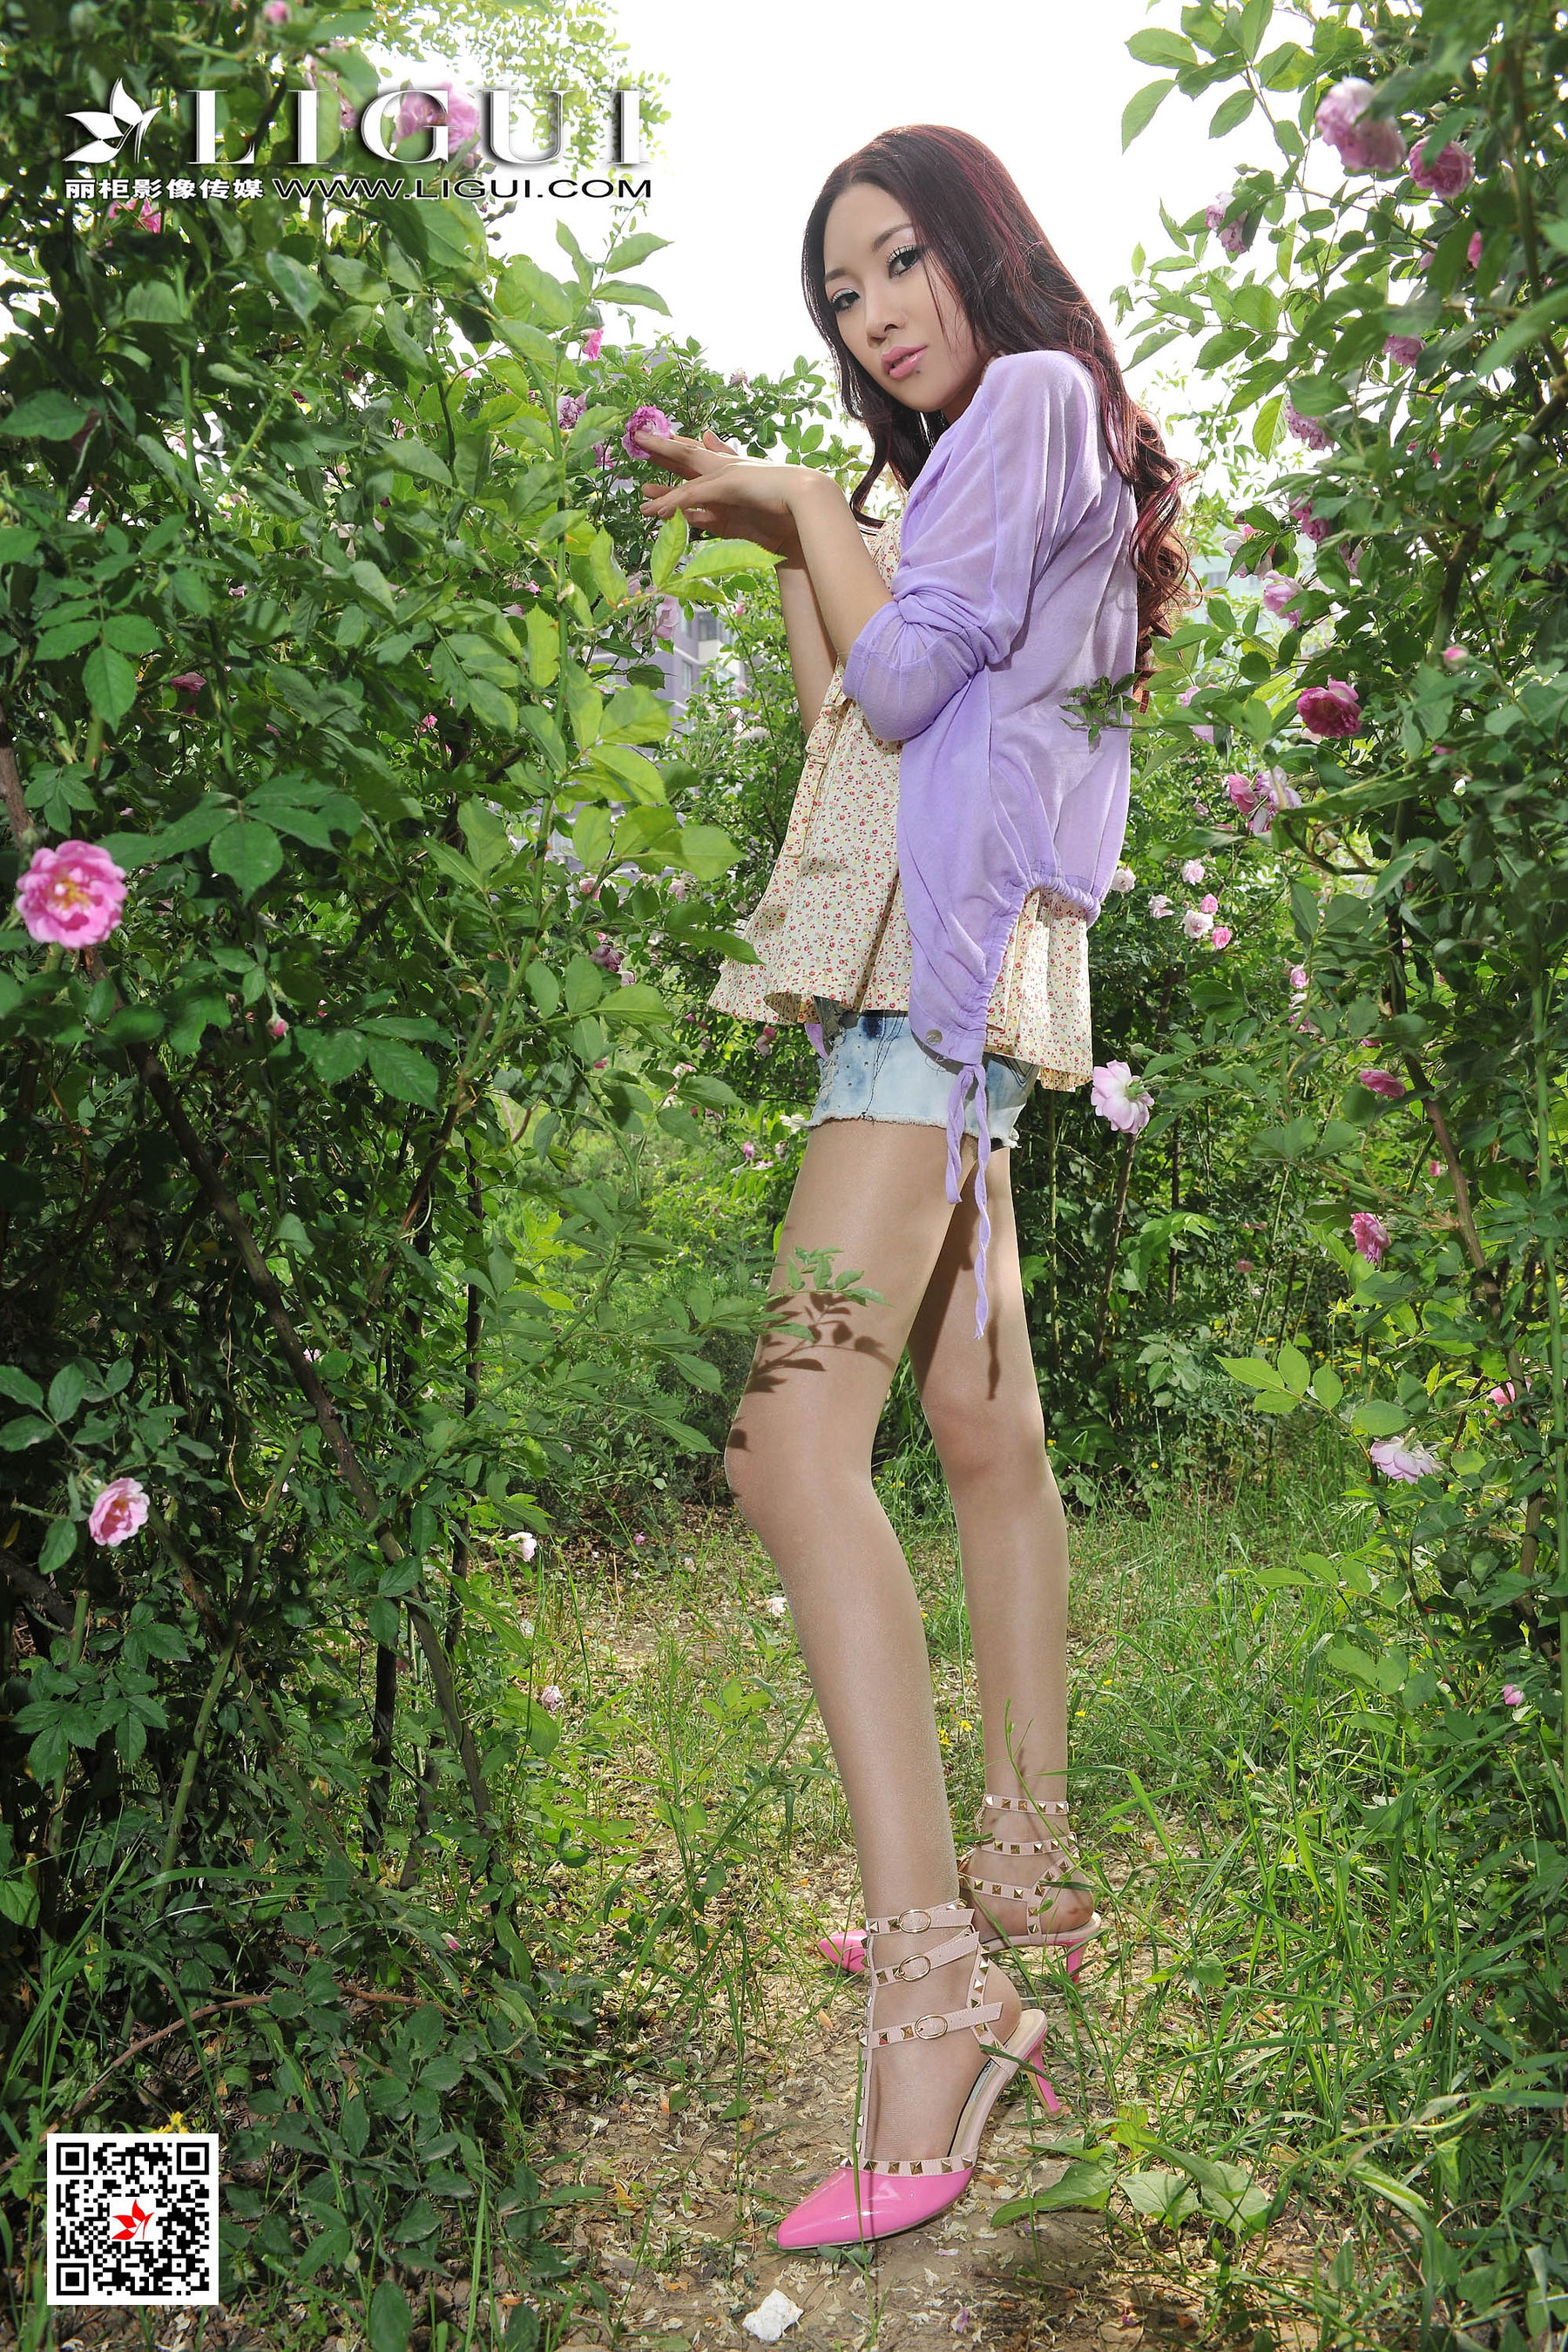 [丽柜Ligui] Model Wenxin "Putsy Hot Pants Girl" Page 39 No.447852